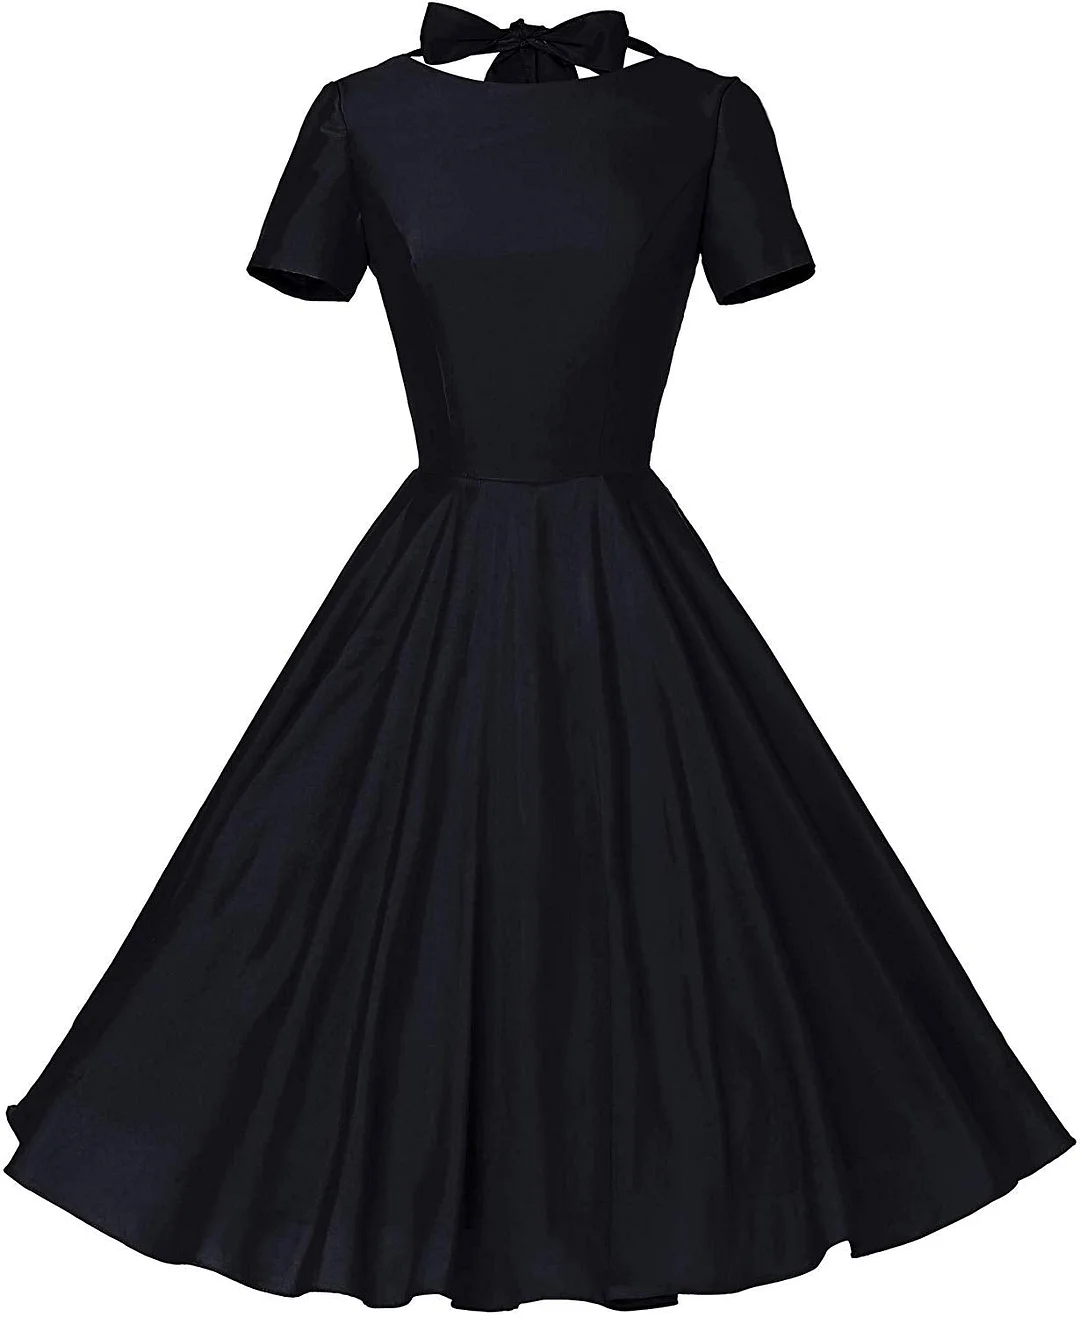 1950s Dress Womens Vintage Retro Party Swing Dress Rockabillty Stretchy Dress